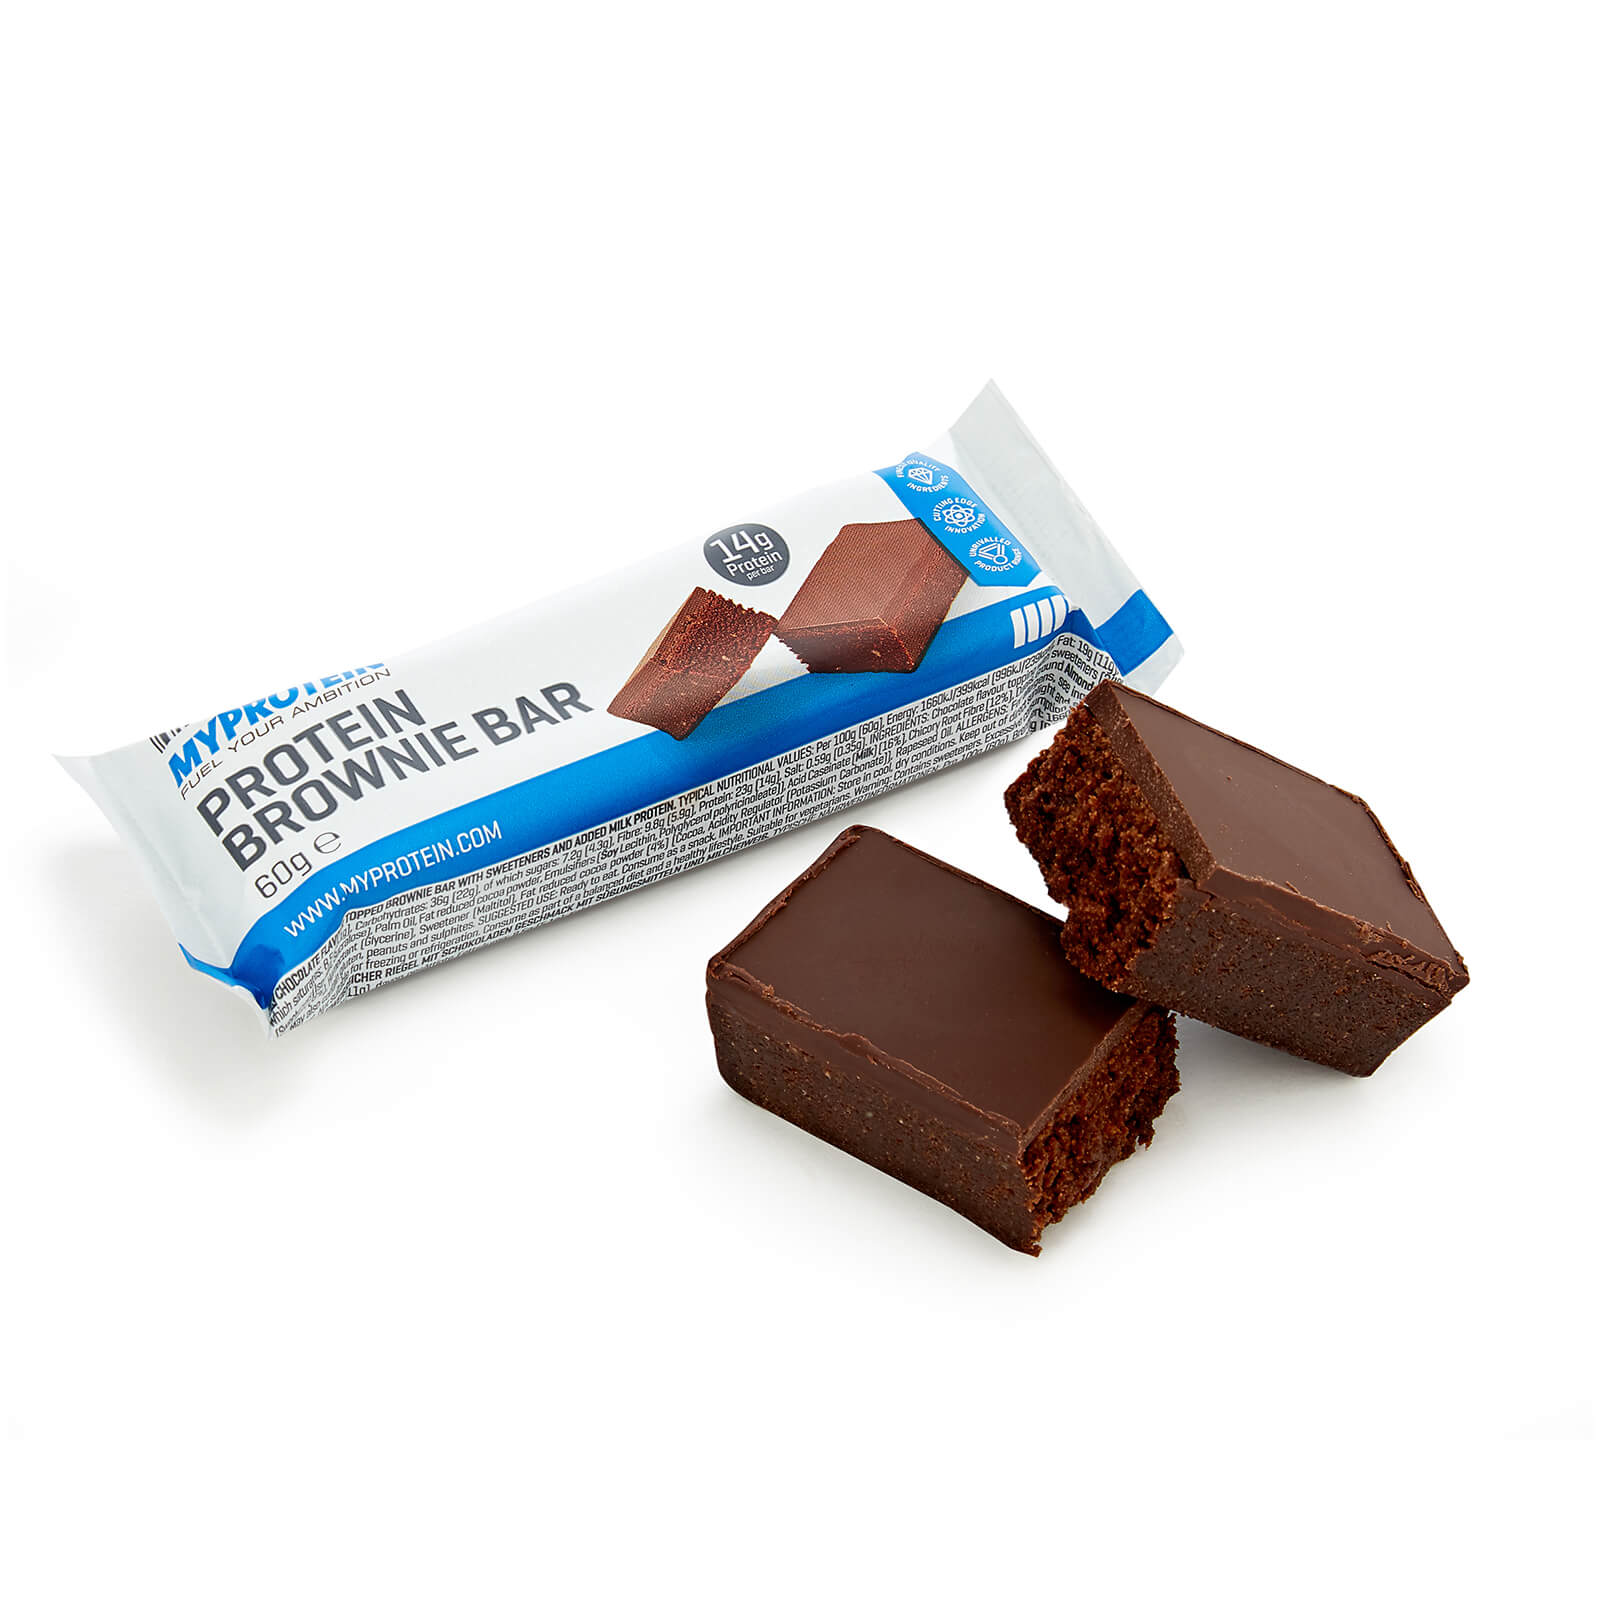 Barre protéinée Brownie (échantillon) - Chocolat